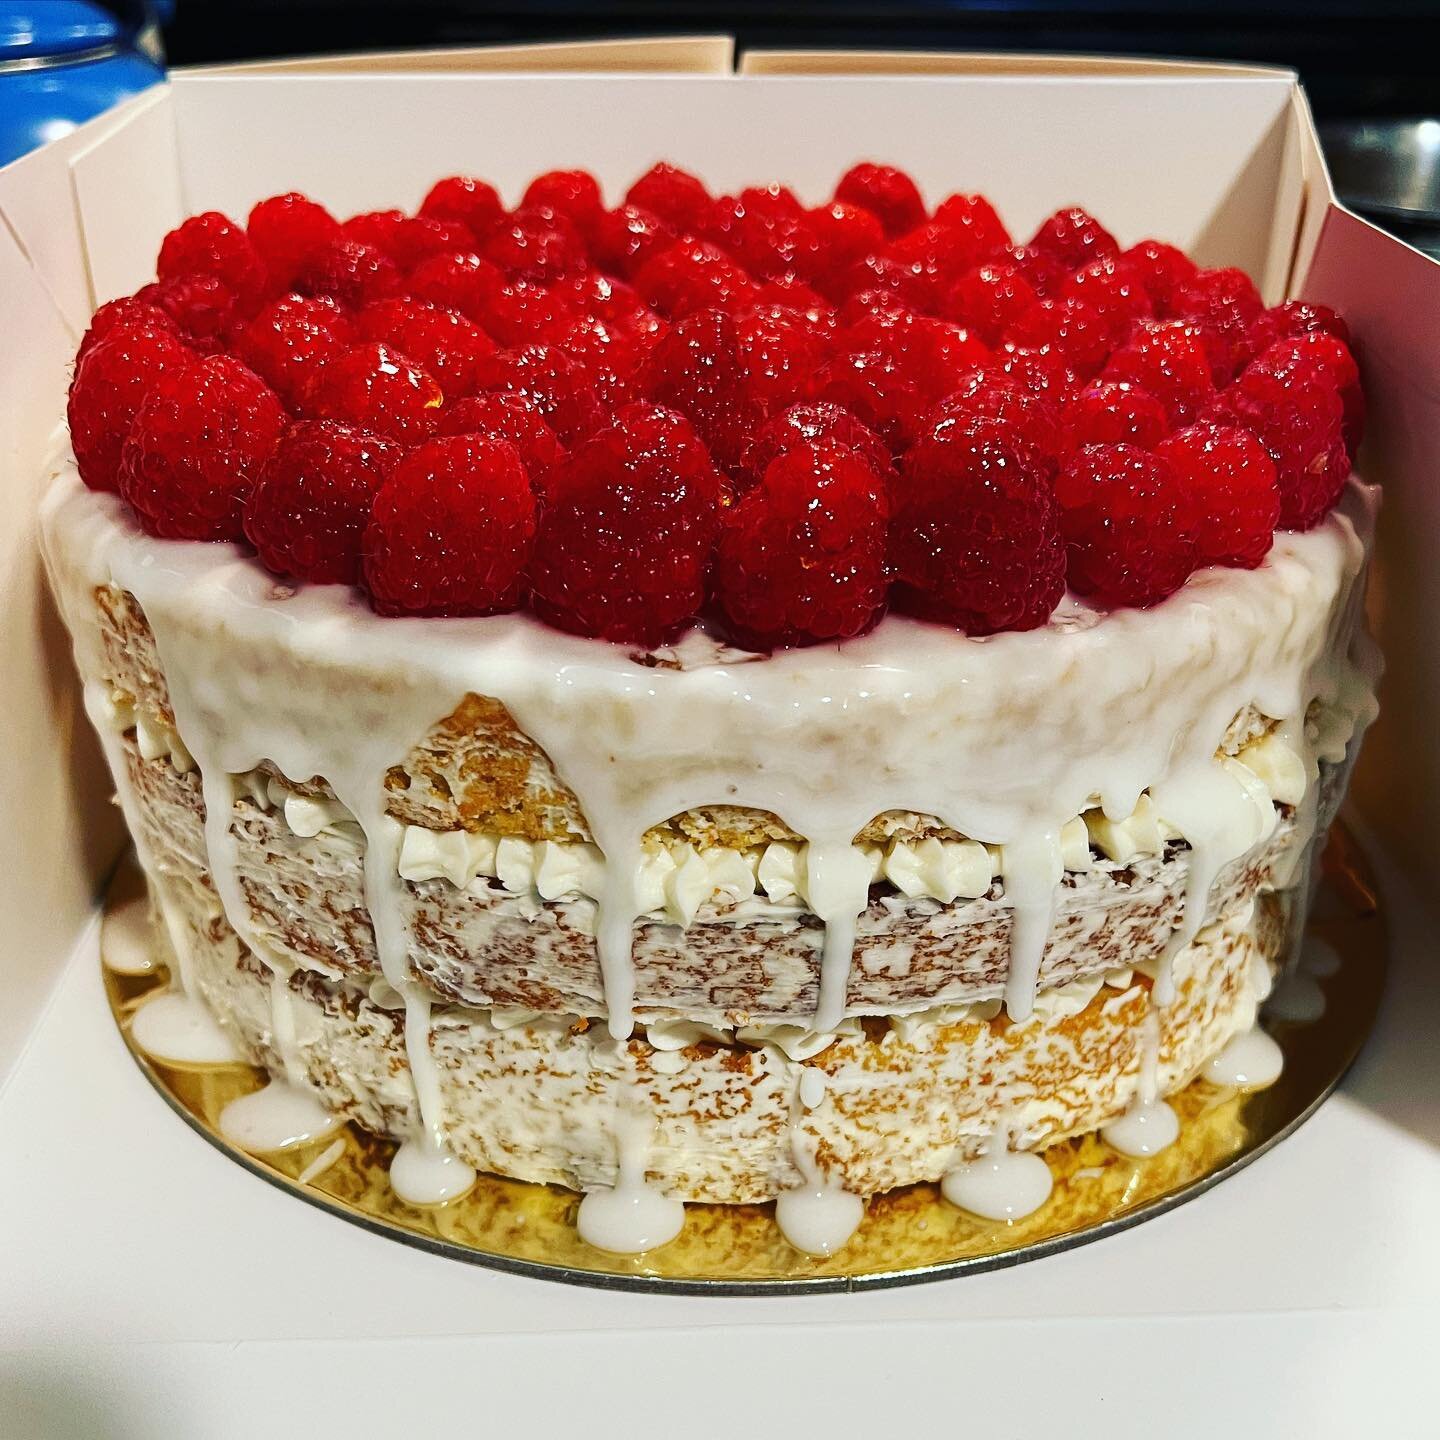 Lemon Cake with Raspberry Filling and a Lemon Glaze
🍋❤️🍋❤️🍋
-
-
-
-
-
#rhbakes #cake #cakes #cakedecorating #cakesofinstagram #cakestagram #cakesofinsta #cakesofig #birthdaycake #birthday #lemoncake #raspberries #raspberryfilling #lemonglaze #fres